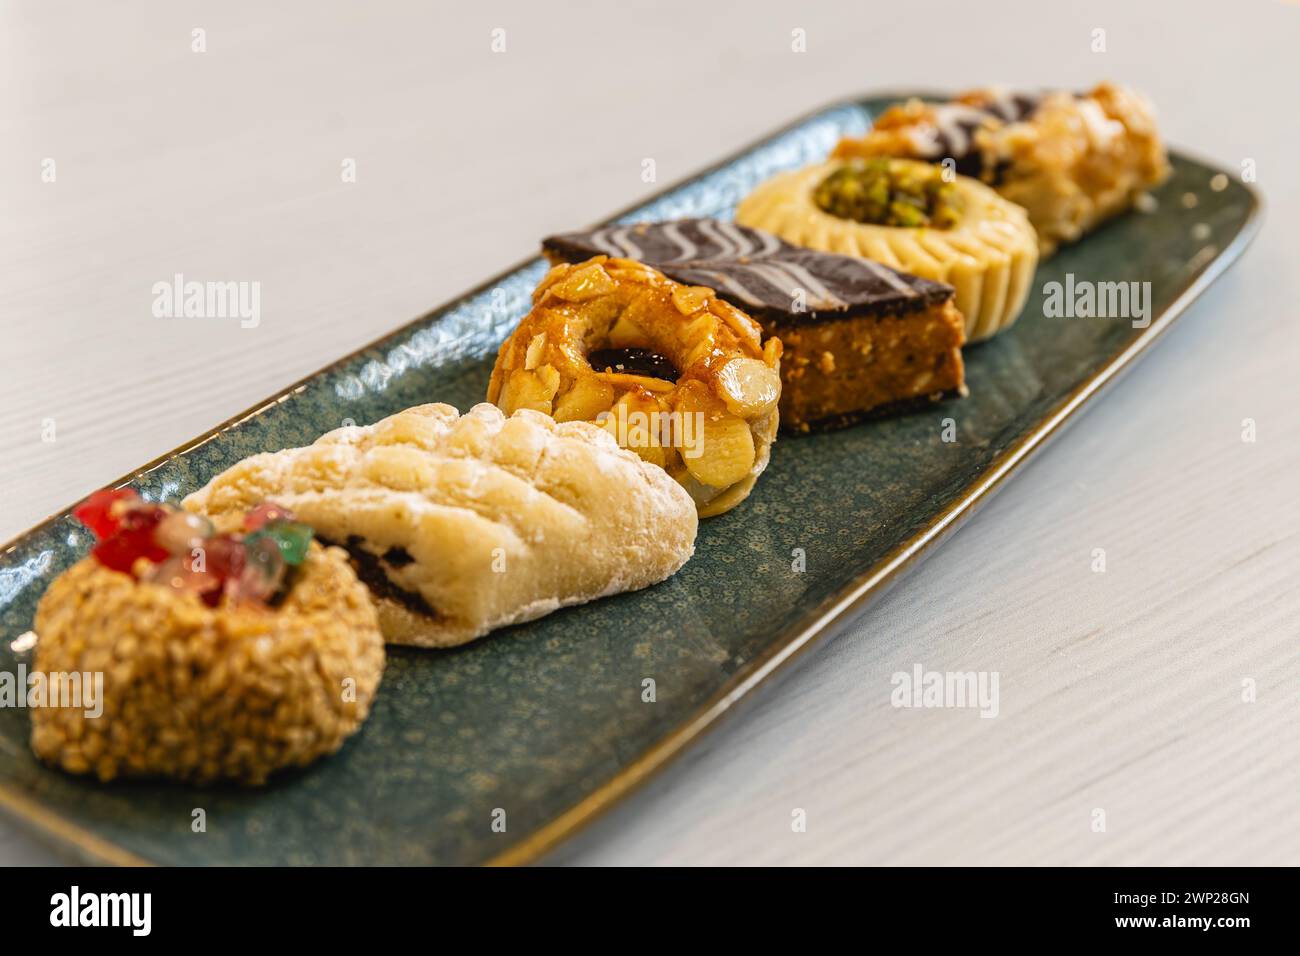 Horizontales Foto ein geschmackvolles Arrangement arabischer Gebäck-Köstlichkeiten mit verschiedenen Belägen, künstlerisch auf einer strukturierten blauen Platte serviert, ideal für h Stockfoto